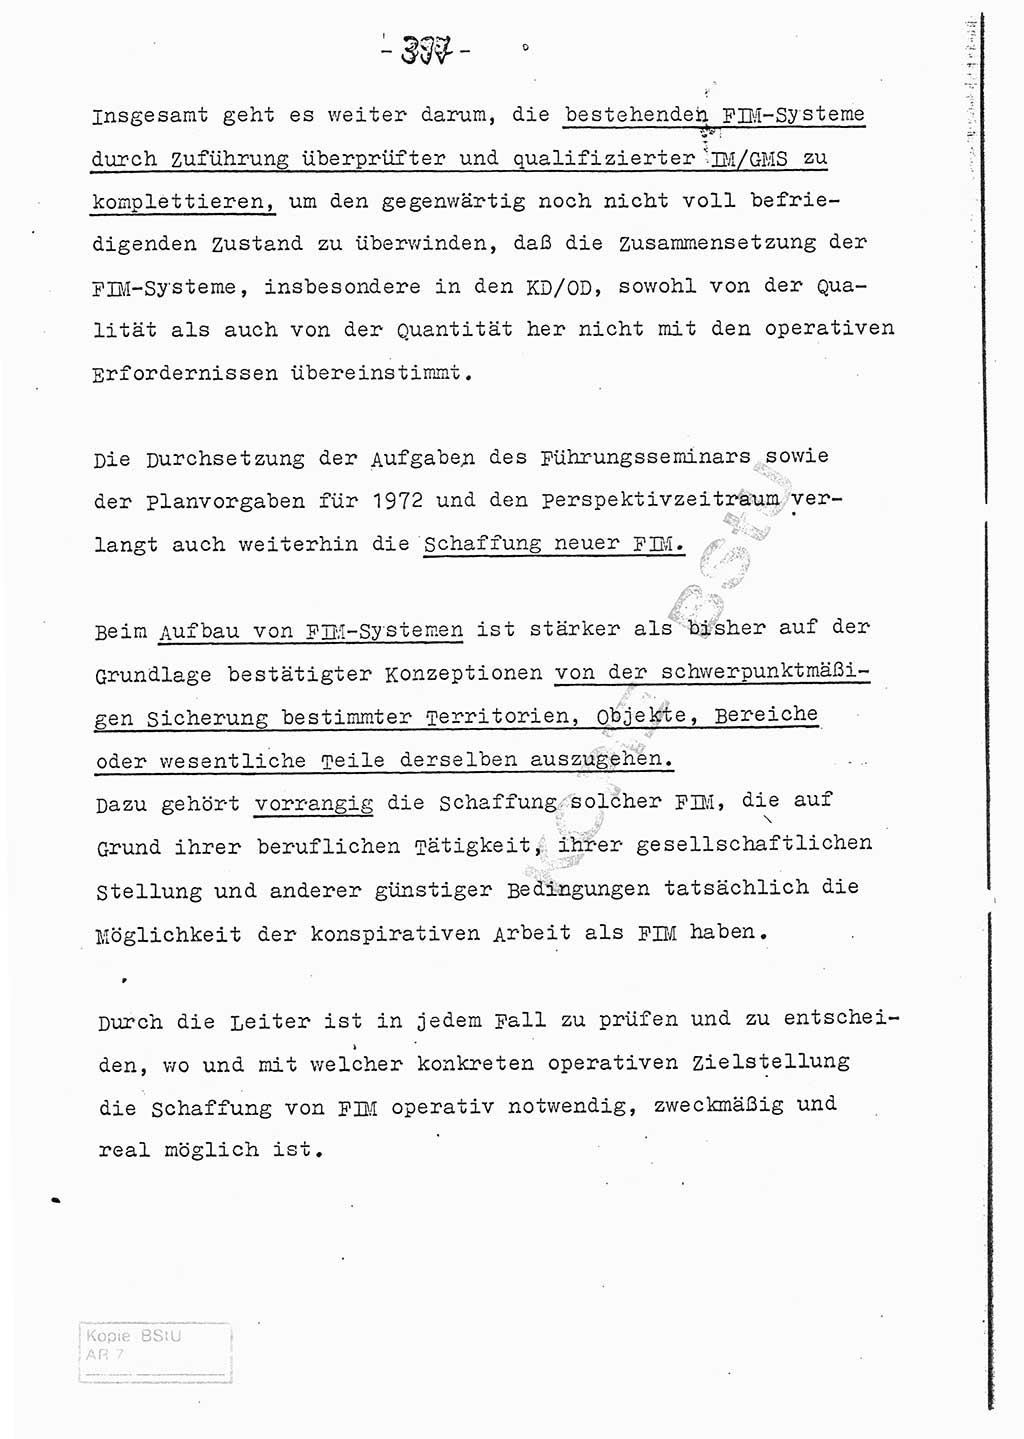 Referat (Entwurf) des Genossen Minister (Generaloberst Erich Mielke) auf der Dienstkonferenz 1972, Ministerium für Staatssicherheit (MfS) [Deutsche Demokratische Republik (DDR)], Der Minister, Geheime Verschlußsache (GVS) 008-150/72, Berlin 25.2.1972, Seite 397 (Ref. Entw. DK MfS DDR Min. GVS 008-150/72 1972, S. 397)